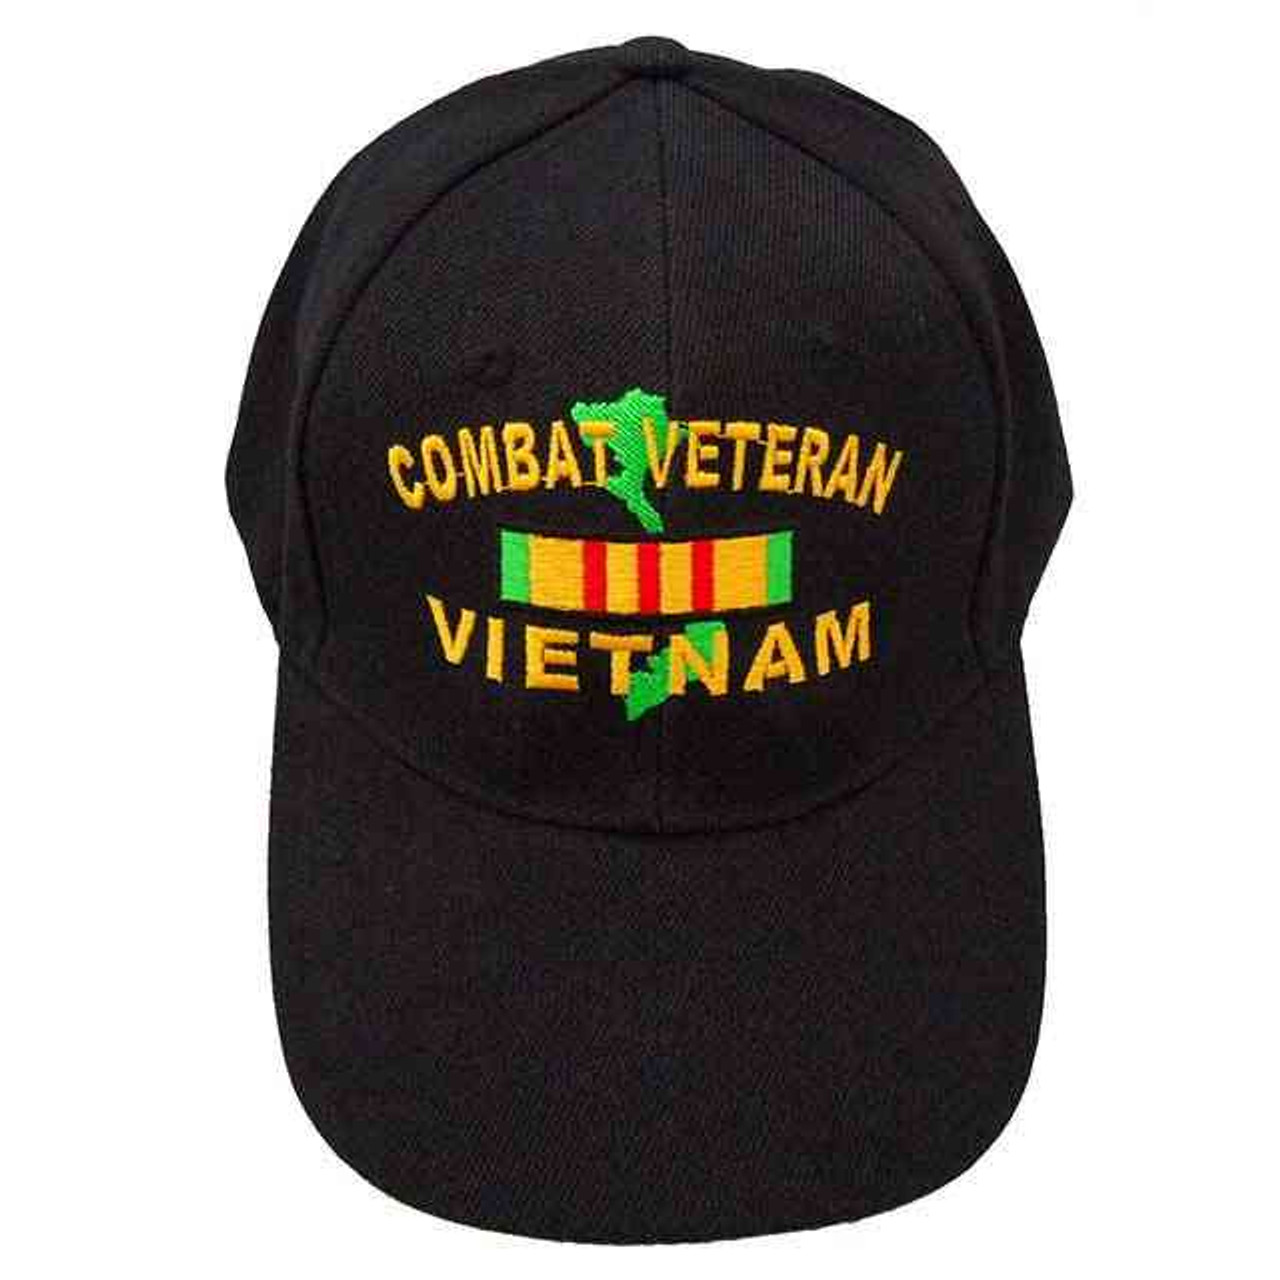 combat veteran vietnam map hat